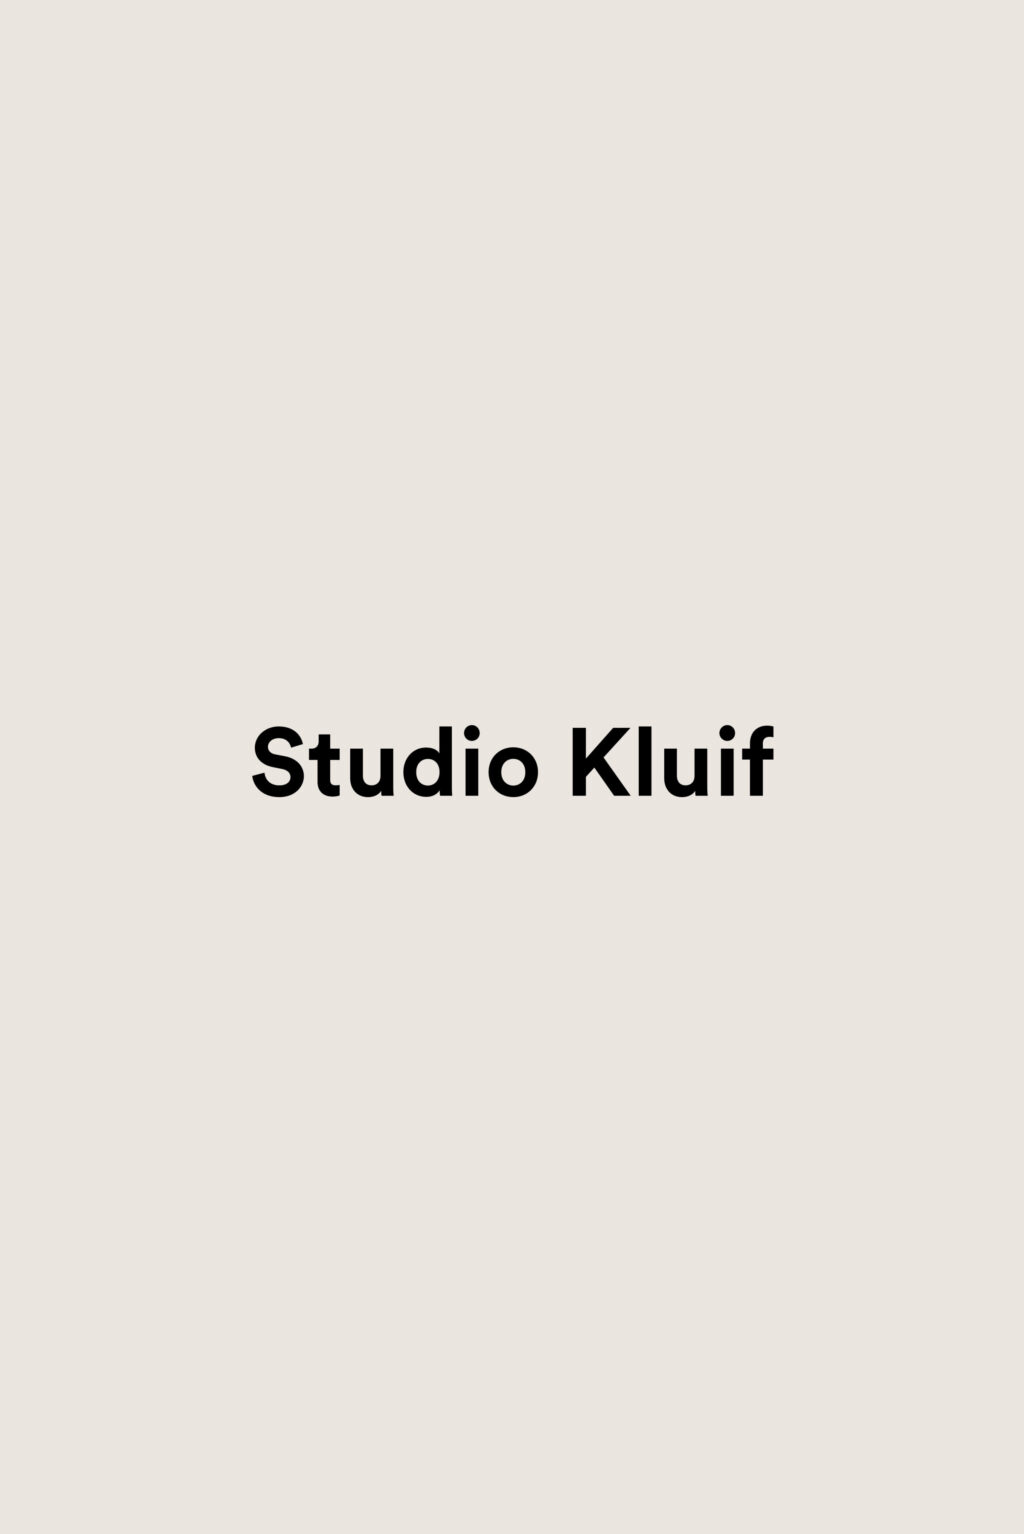 CorUnum-StudioKluif-naambadge